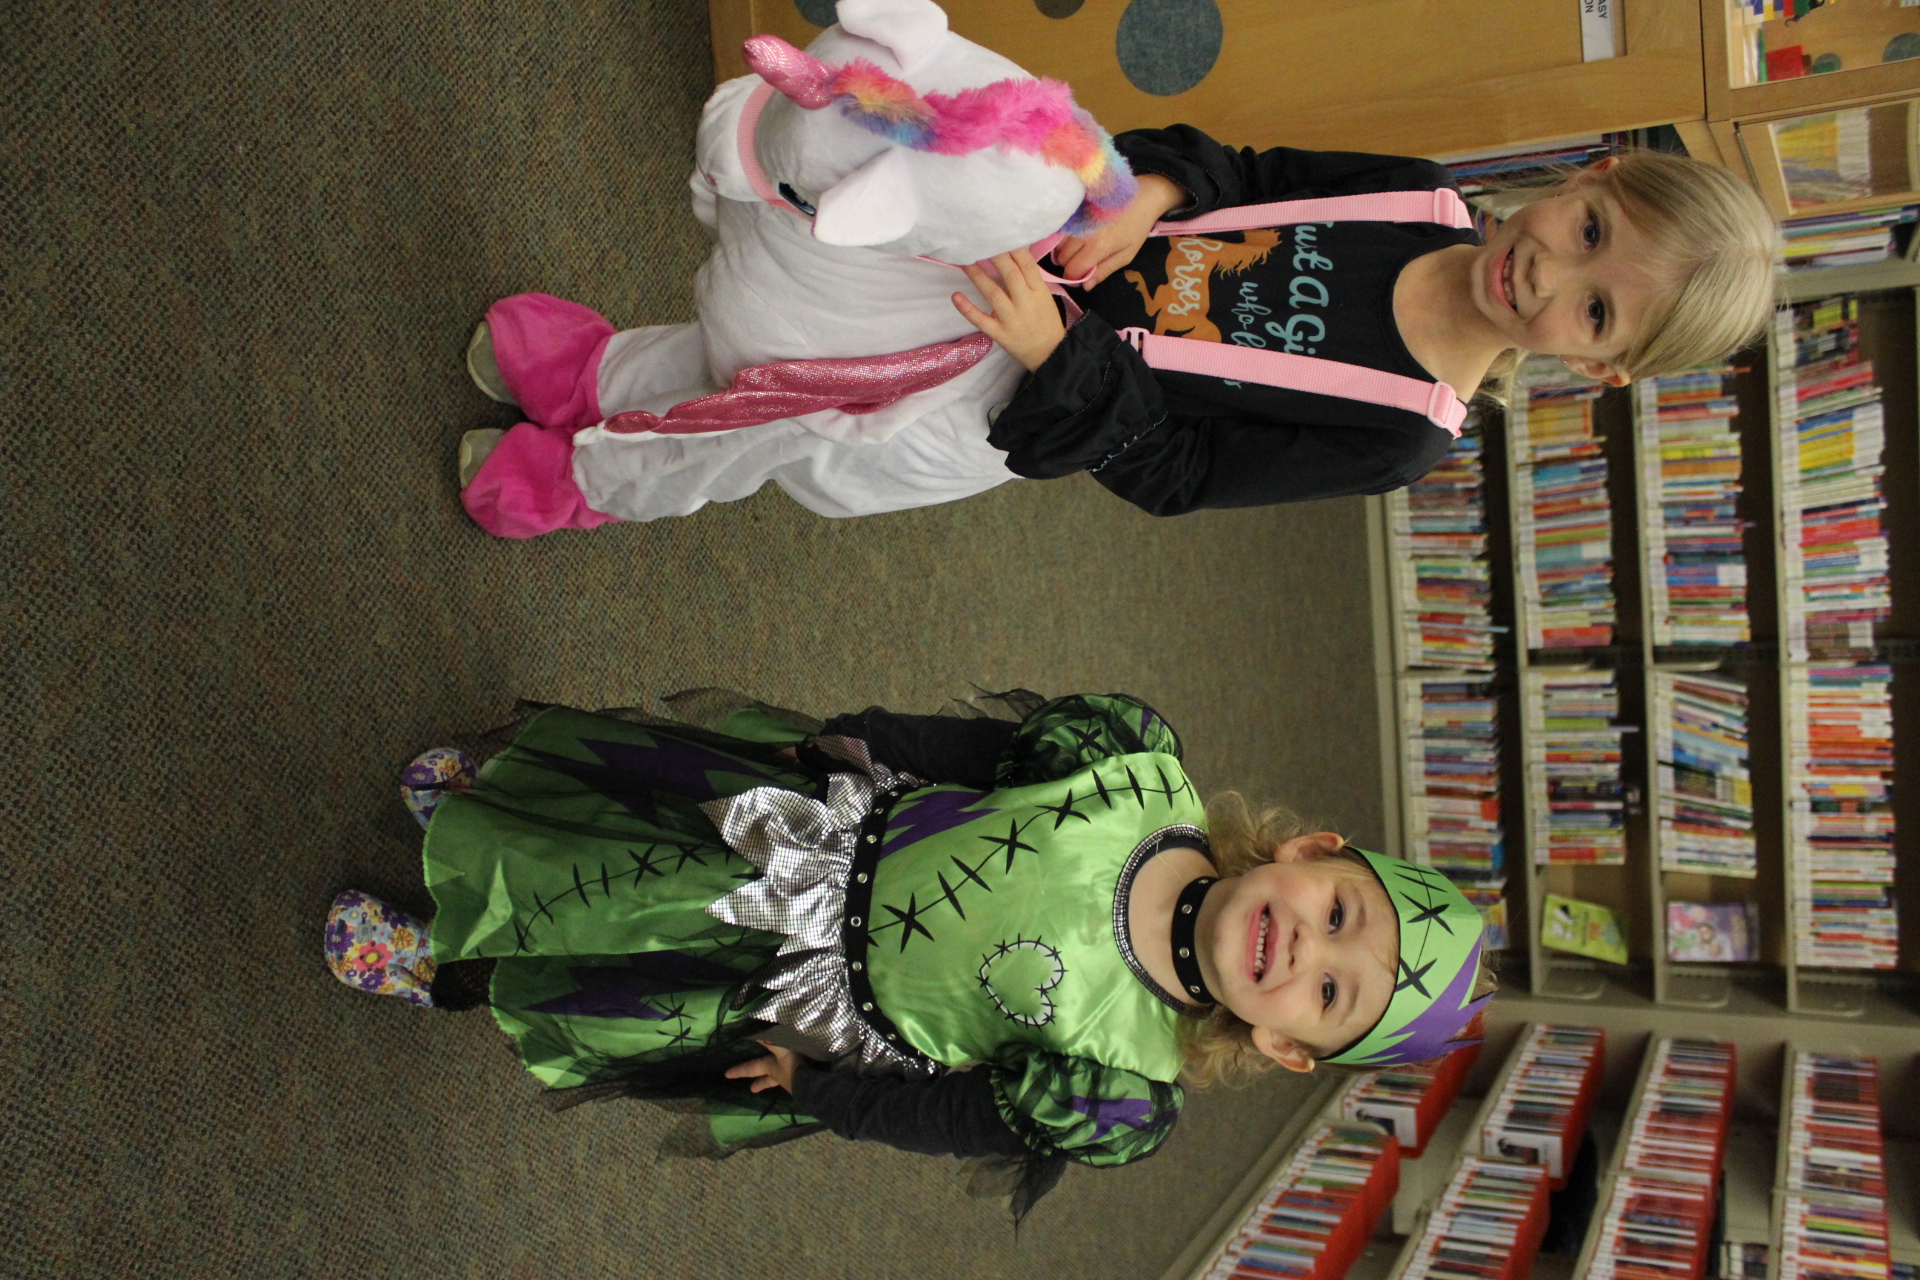 Children dressed as unicorn and Frankenstein's monster